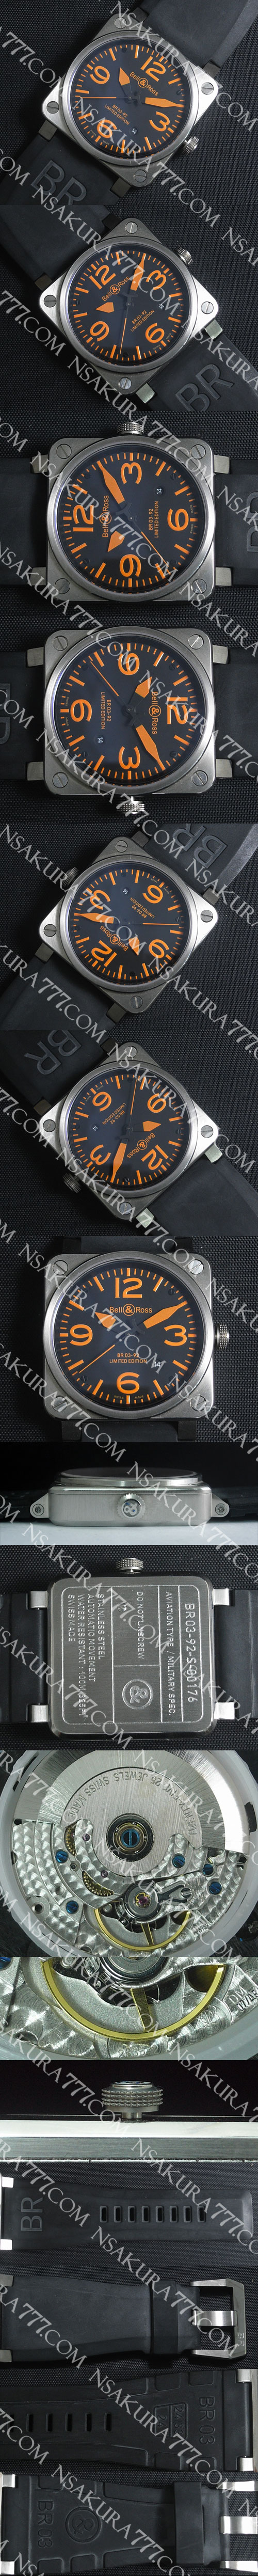 レプリカ時計ベル&ロス BR 03-92 Swiss 2836-2 カスタム ムーブメント搭載 - ウインドウを閉じる